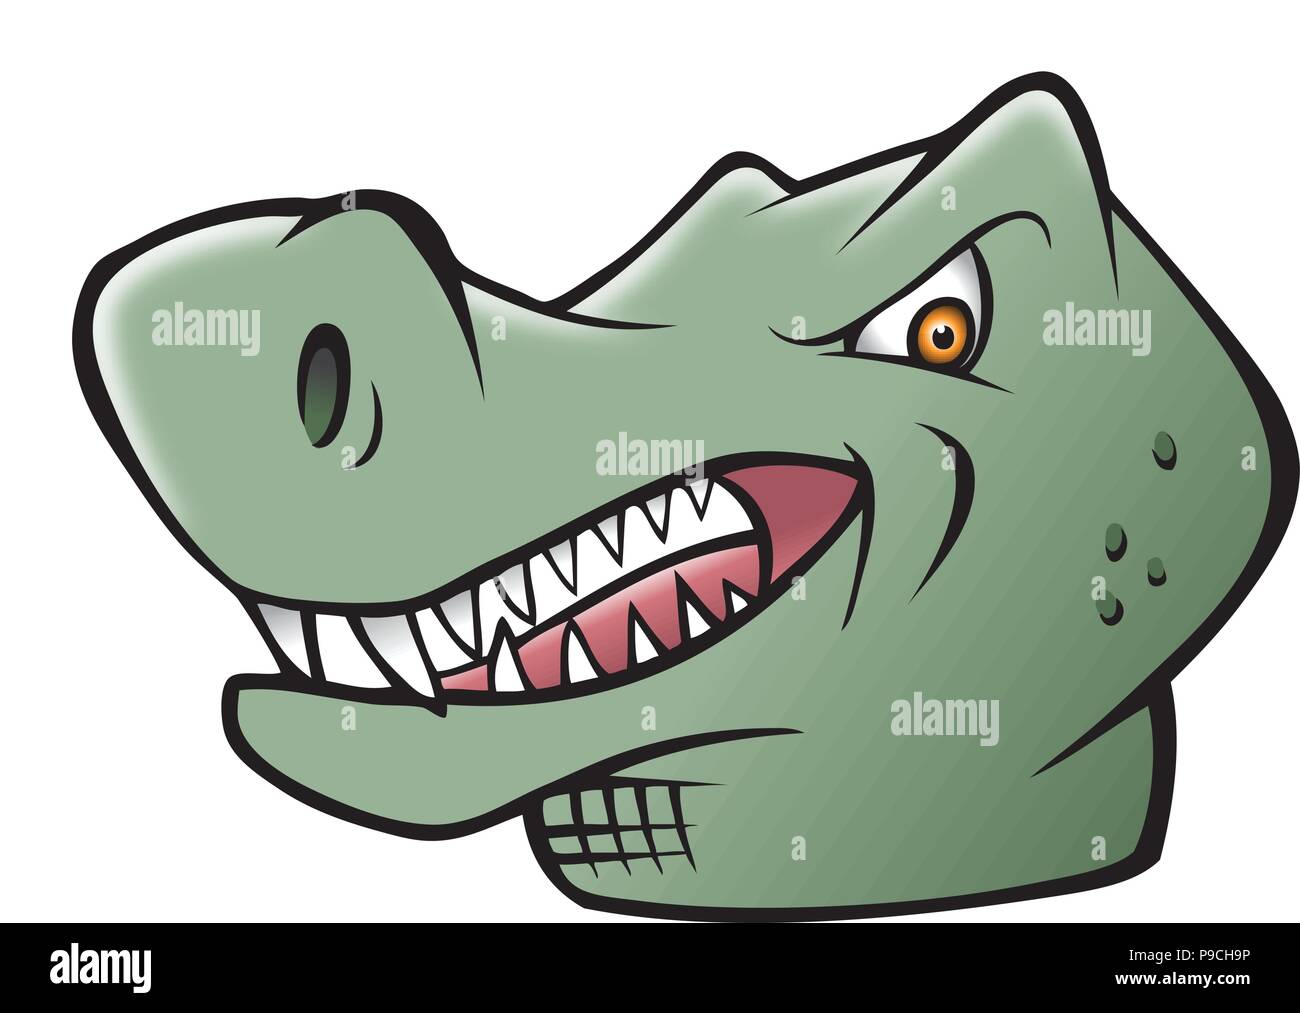 cartoon vector illustration of a dinosaur t-rex Stock Vector